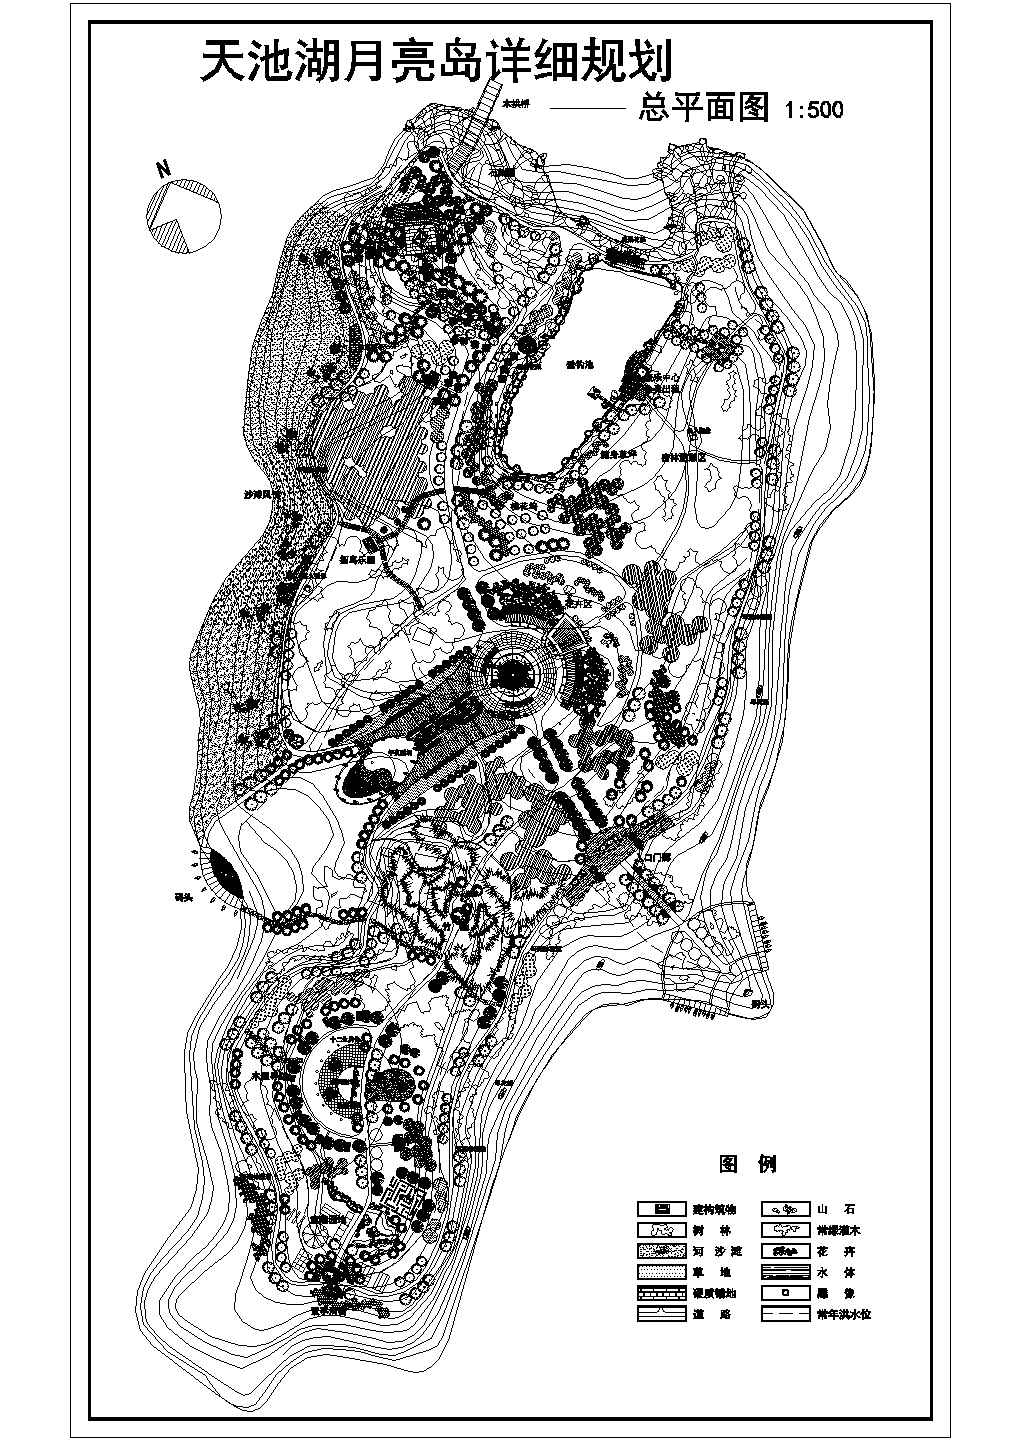 天池湖月亮岛公园详细规划设计cad施工总平面图